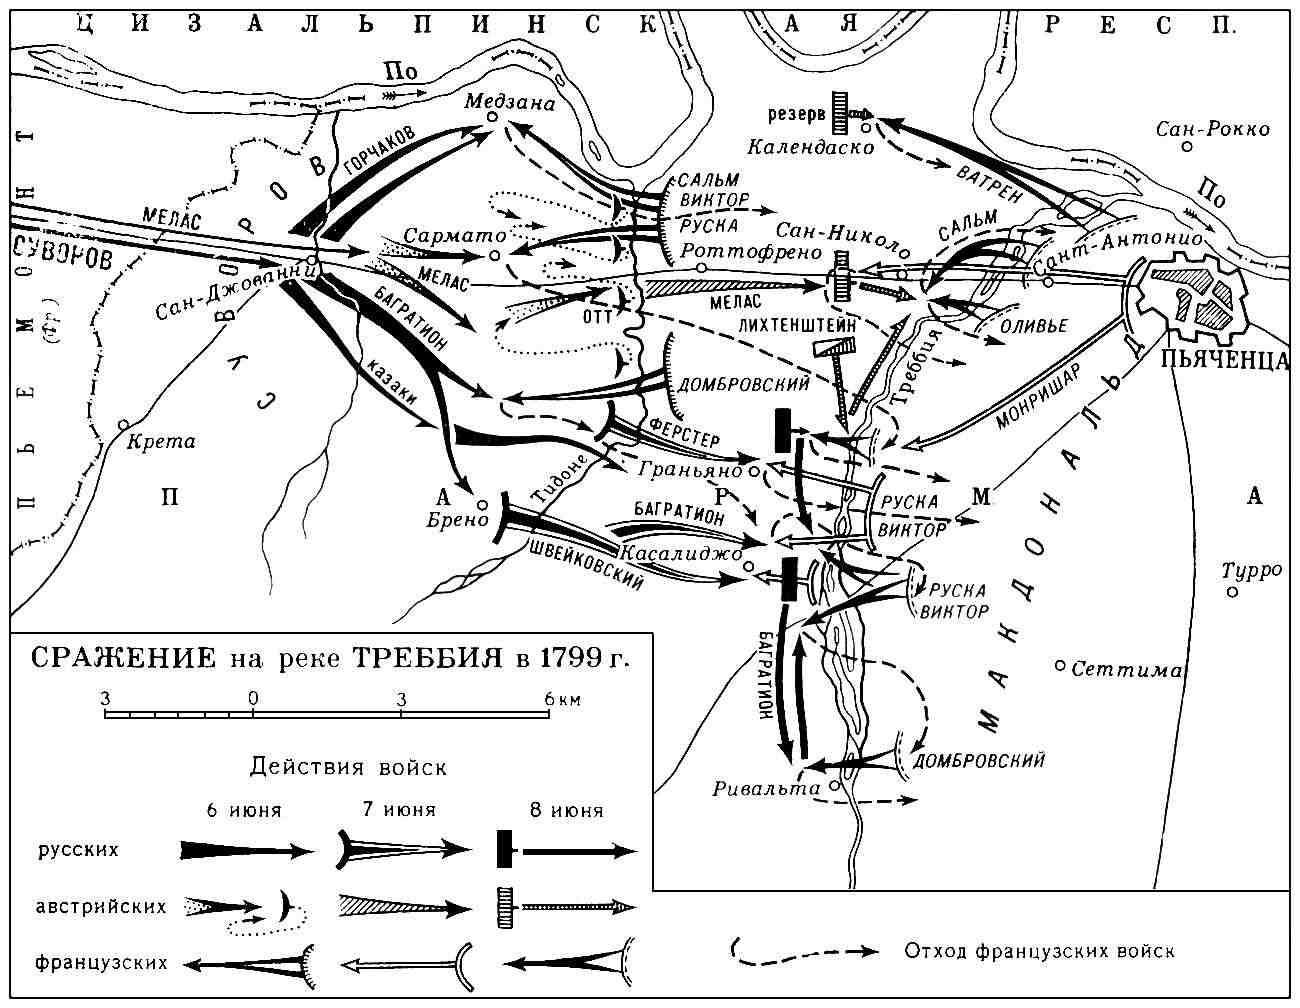 Карта битвы при Треббии с указанием позиций противоборствующих сторон.